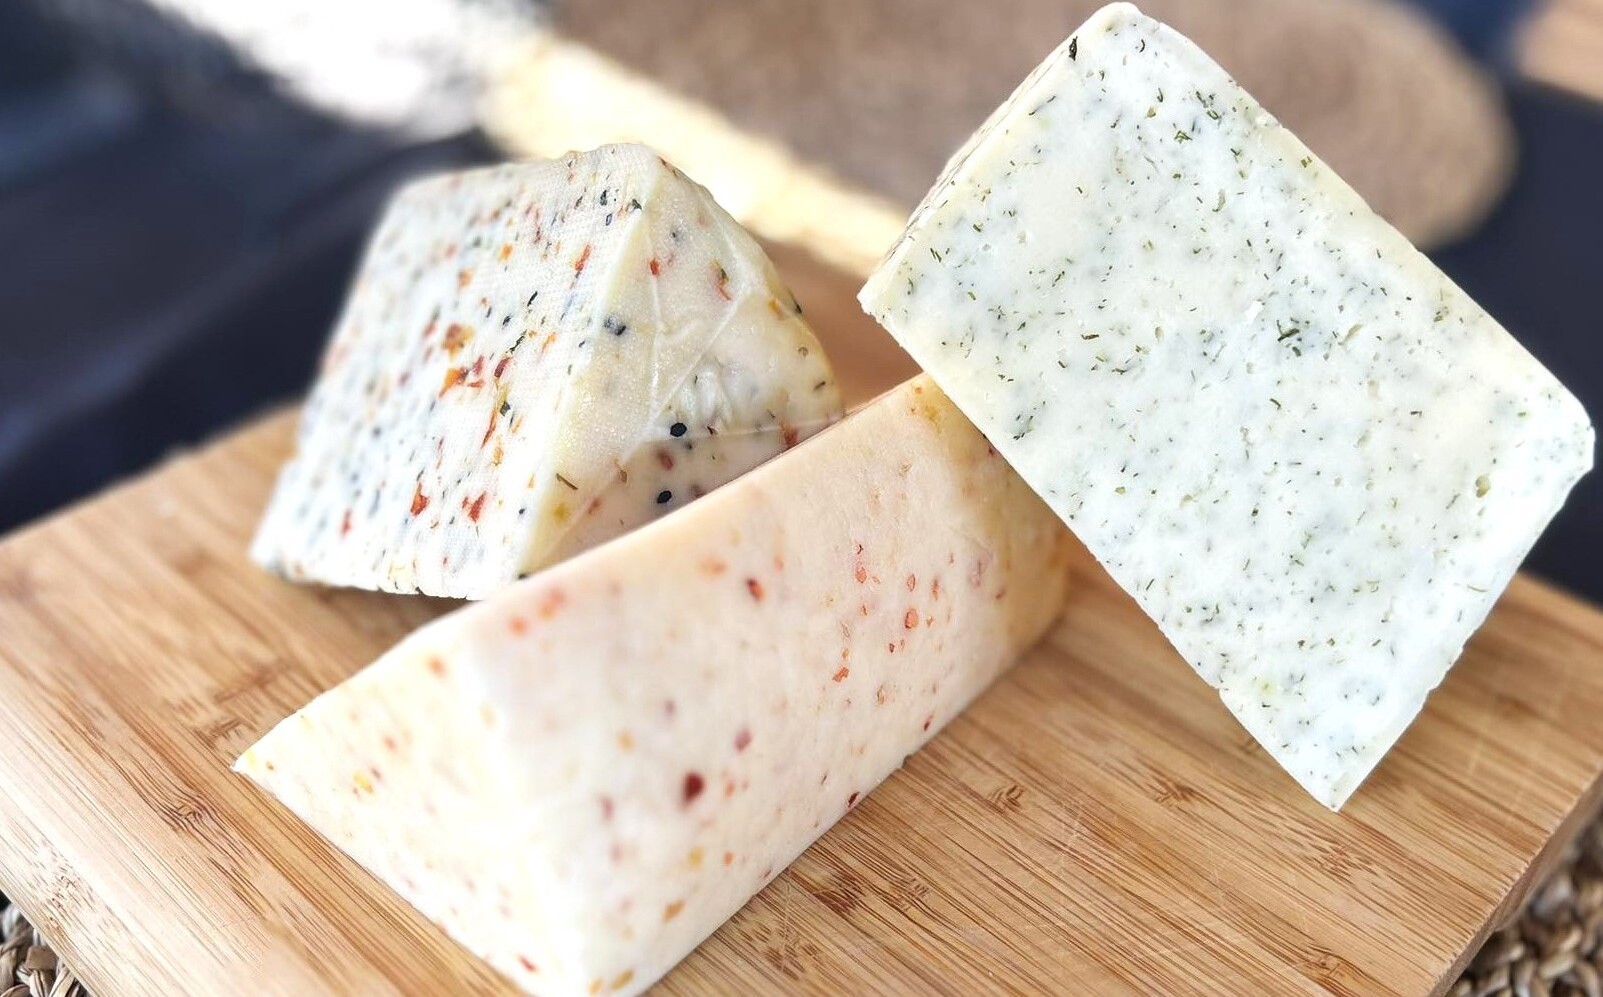 Trzy trójkątne kawałki sera ułożone na desce